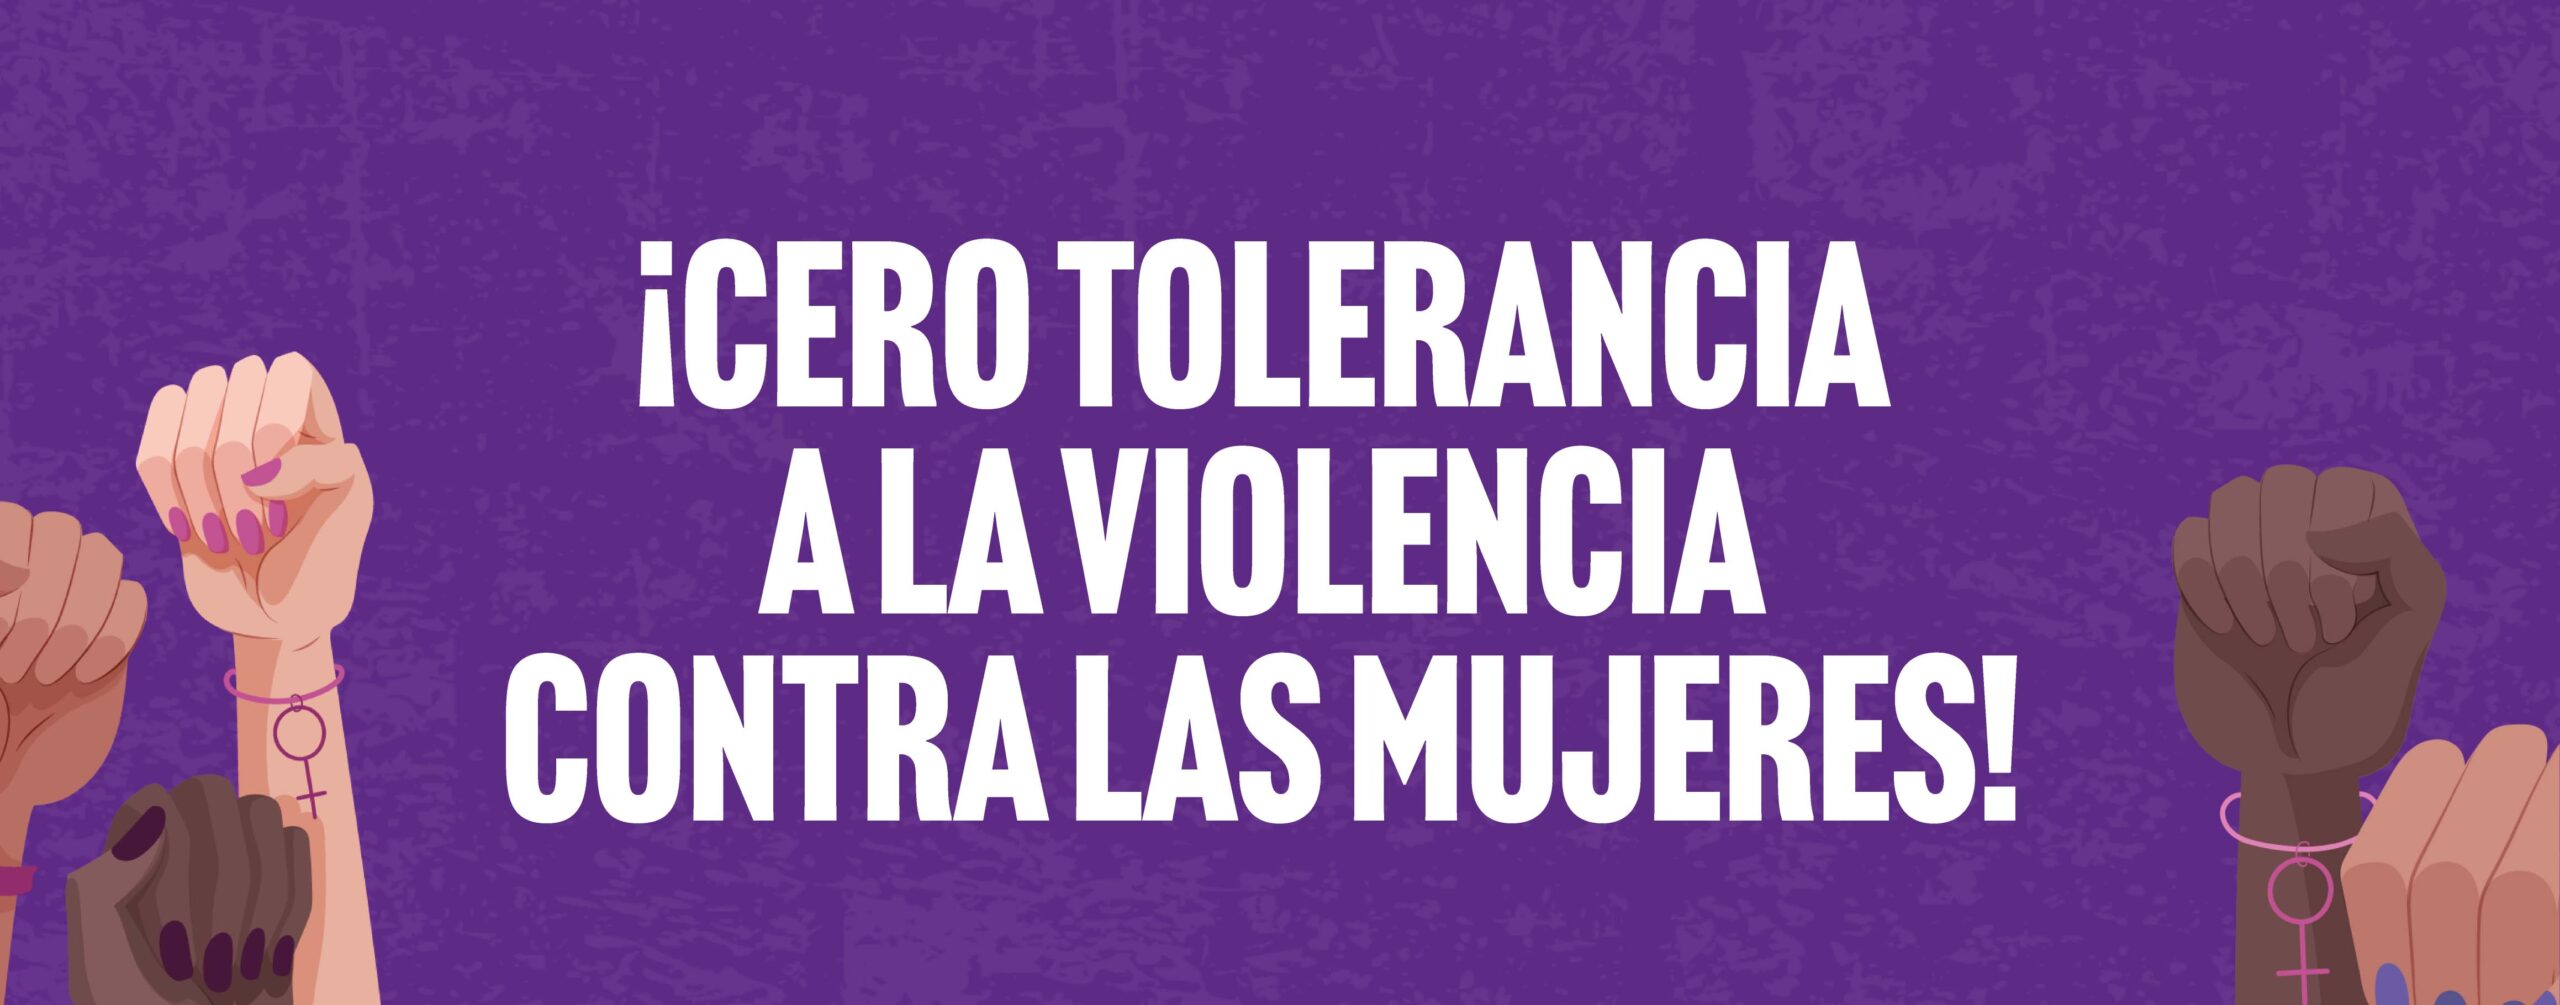 OCNF refrenda el principio de CERO tolerancia a la violencia contra las mujeres